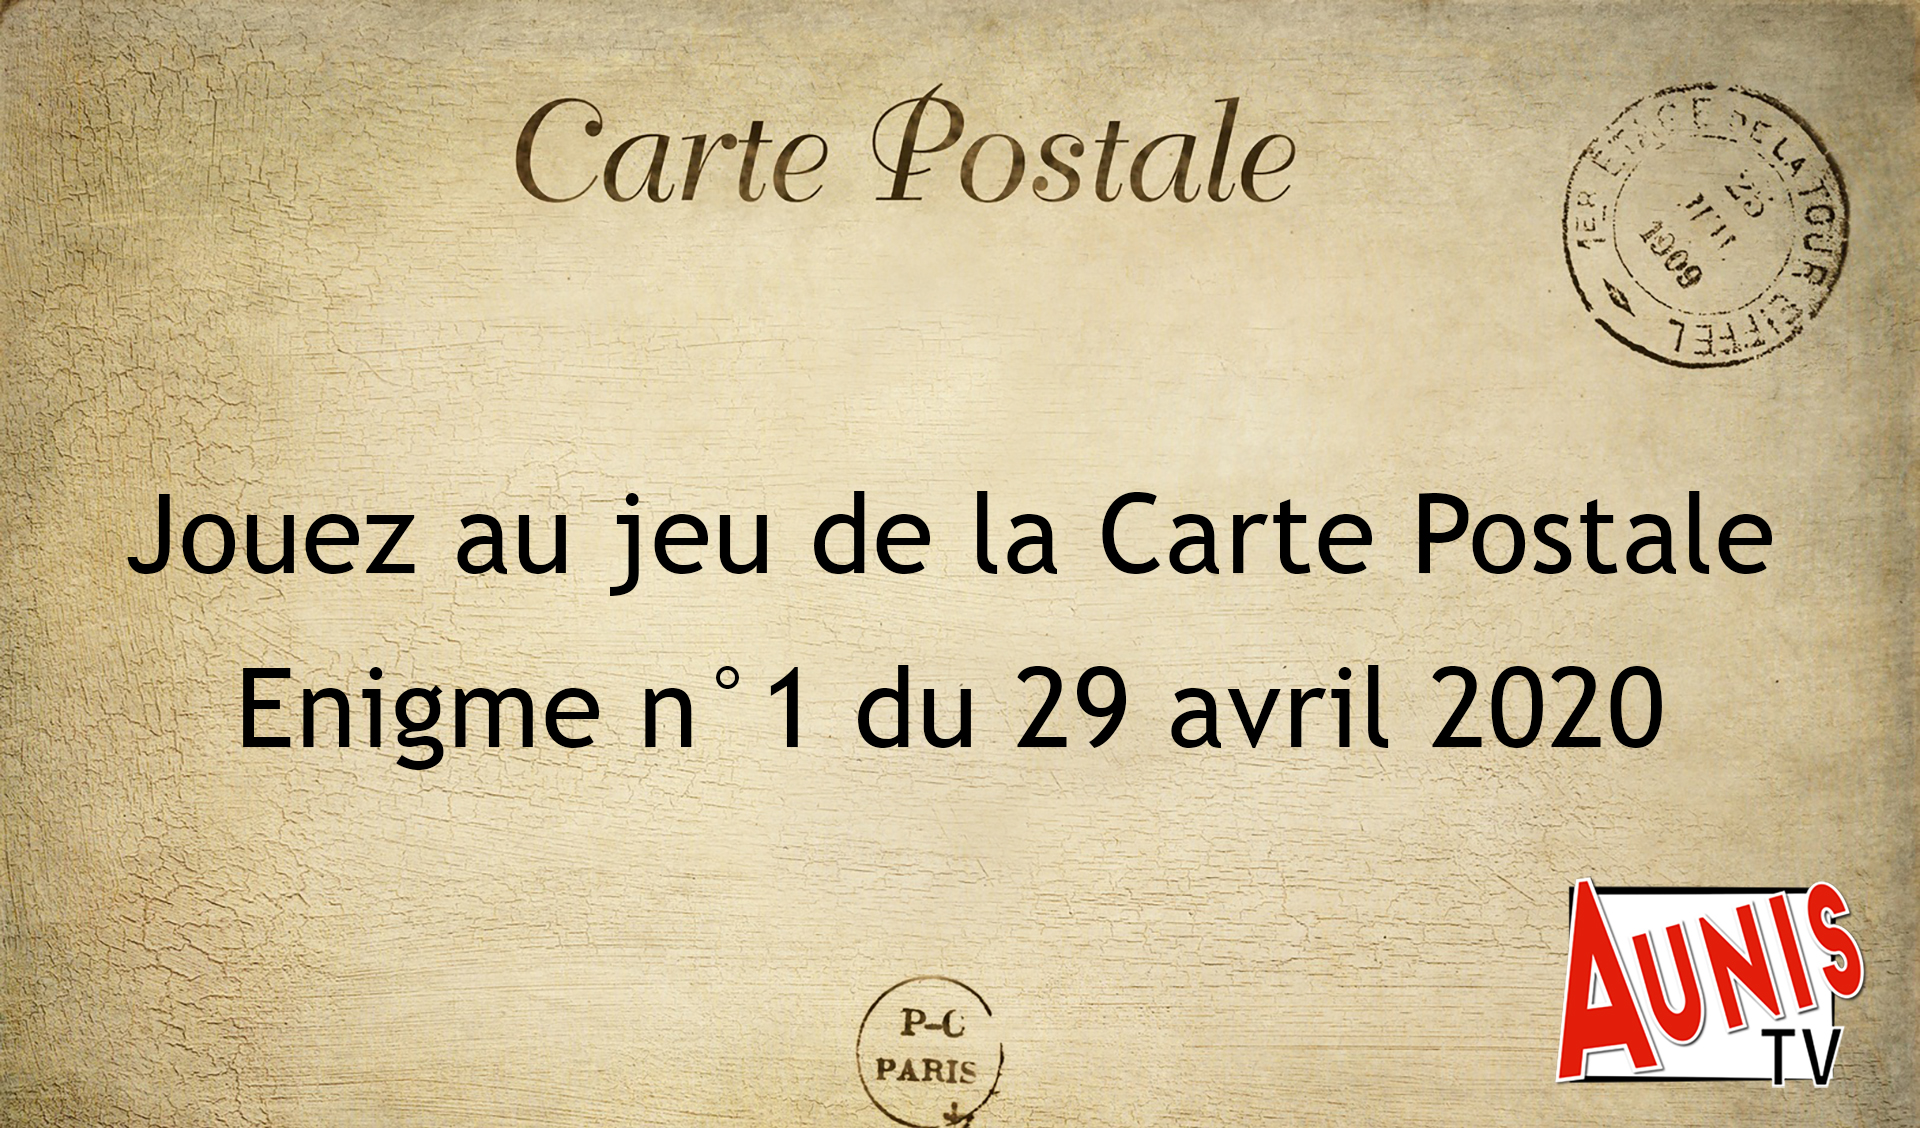 Jouez au jeu de la Carte Postale. Enigme #1 du 29 avril 2020 – AUNISTV ...